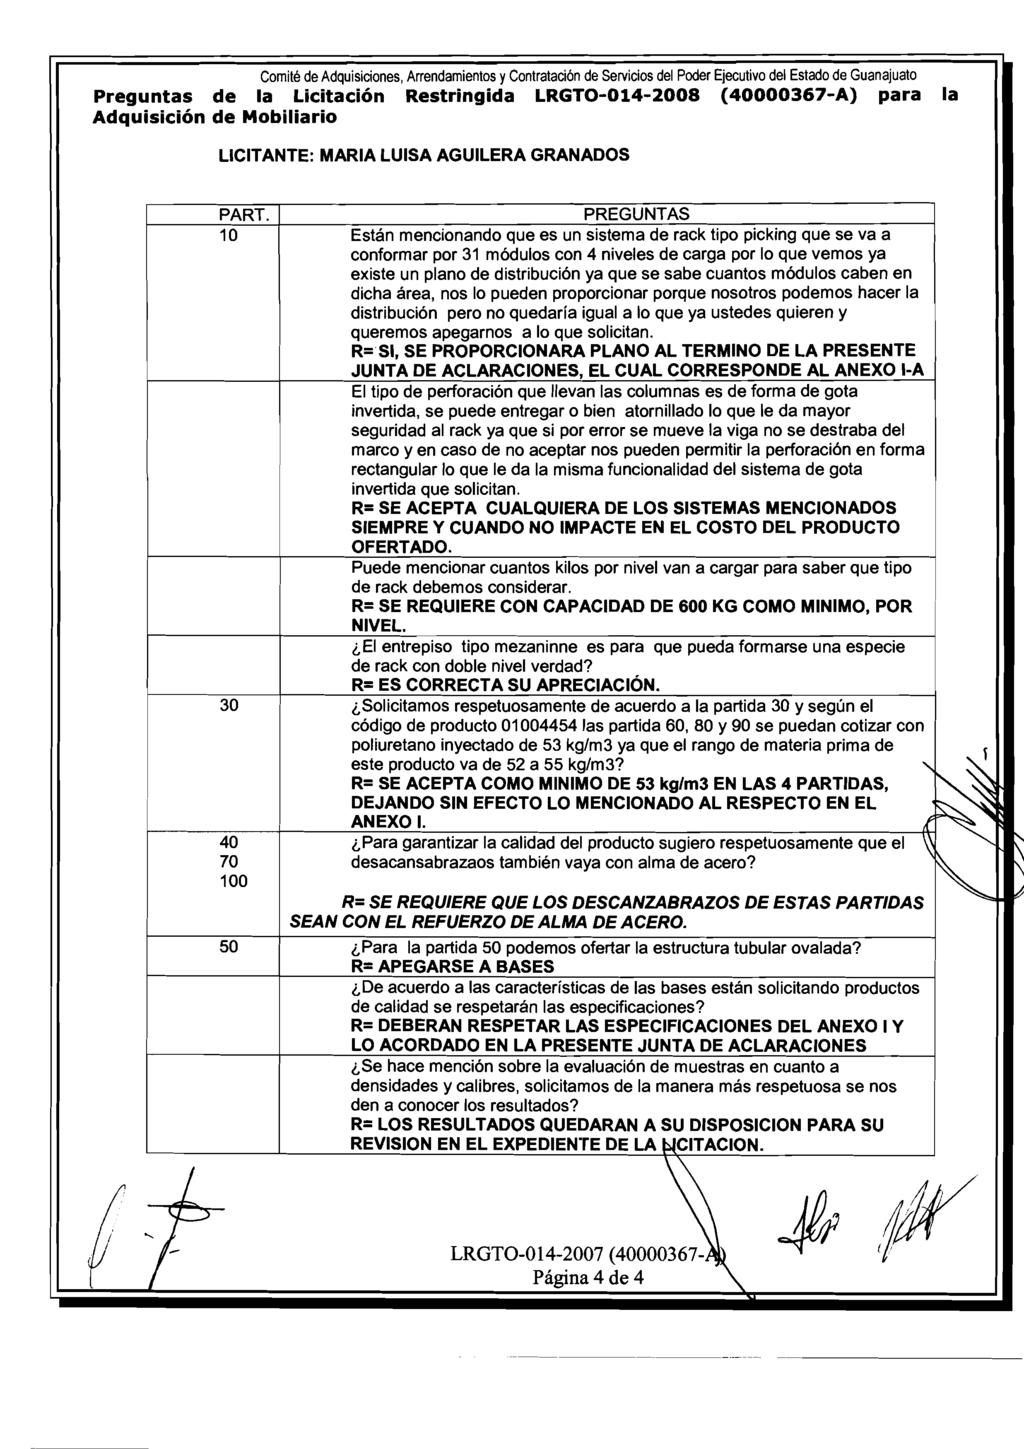 Comte de Adquscones, Arrendamentos y Contratacon de Servcos del Poder Ejecutvo del Estado de Guanajuato Preguntas de la Lctacon Restrngda LRGTO-014-2008 (40000367-A) para la Adquscon de Moblaro